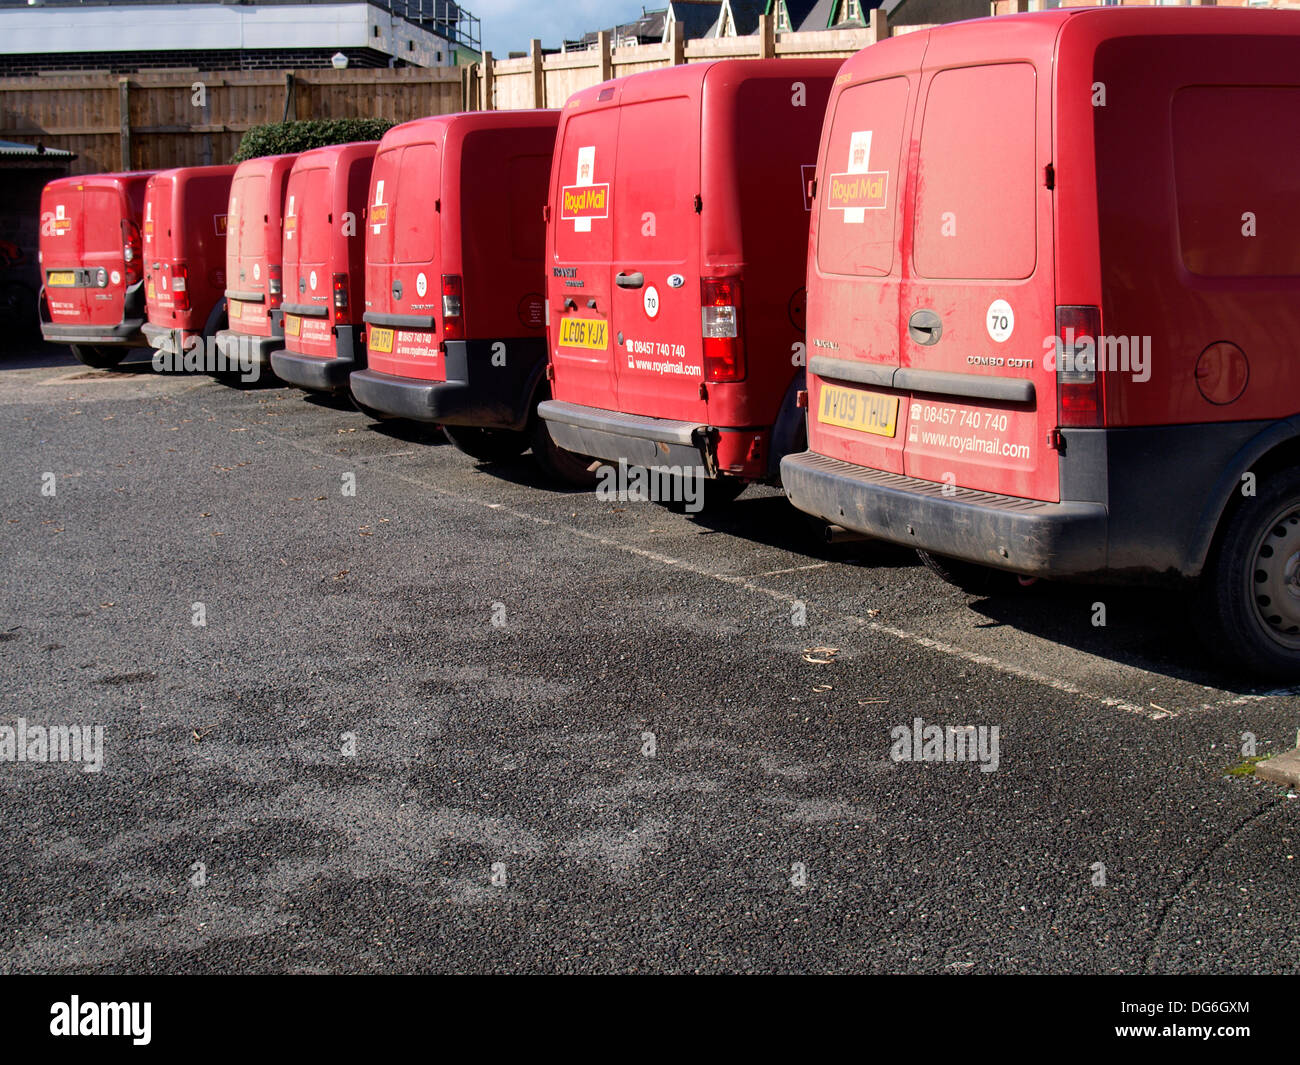 Reihe von Royal Mail vans, Bude, Cornwall, UK Stockfoto